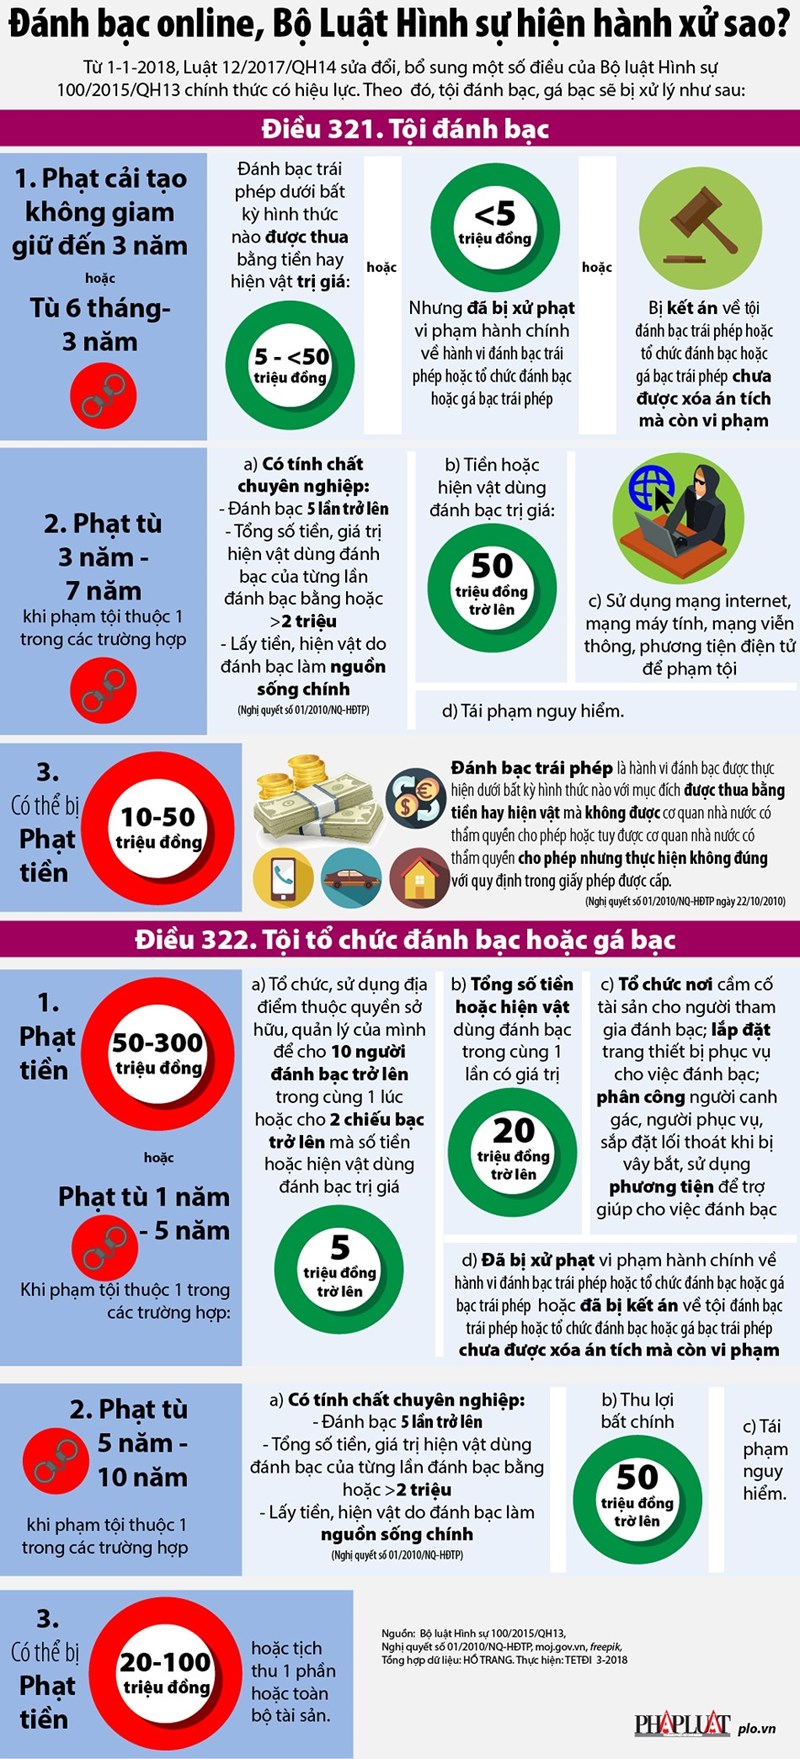 [Infographic] Đánh bạc online, Bộ luật Hình sự hiện hành xử sao? - Ảnh 1